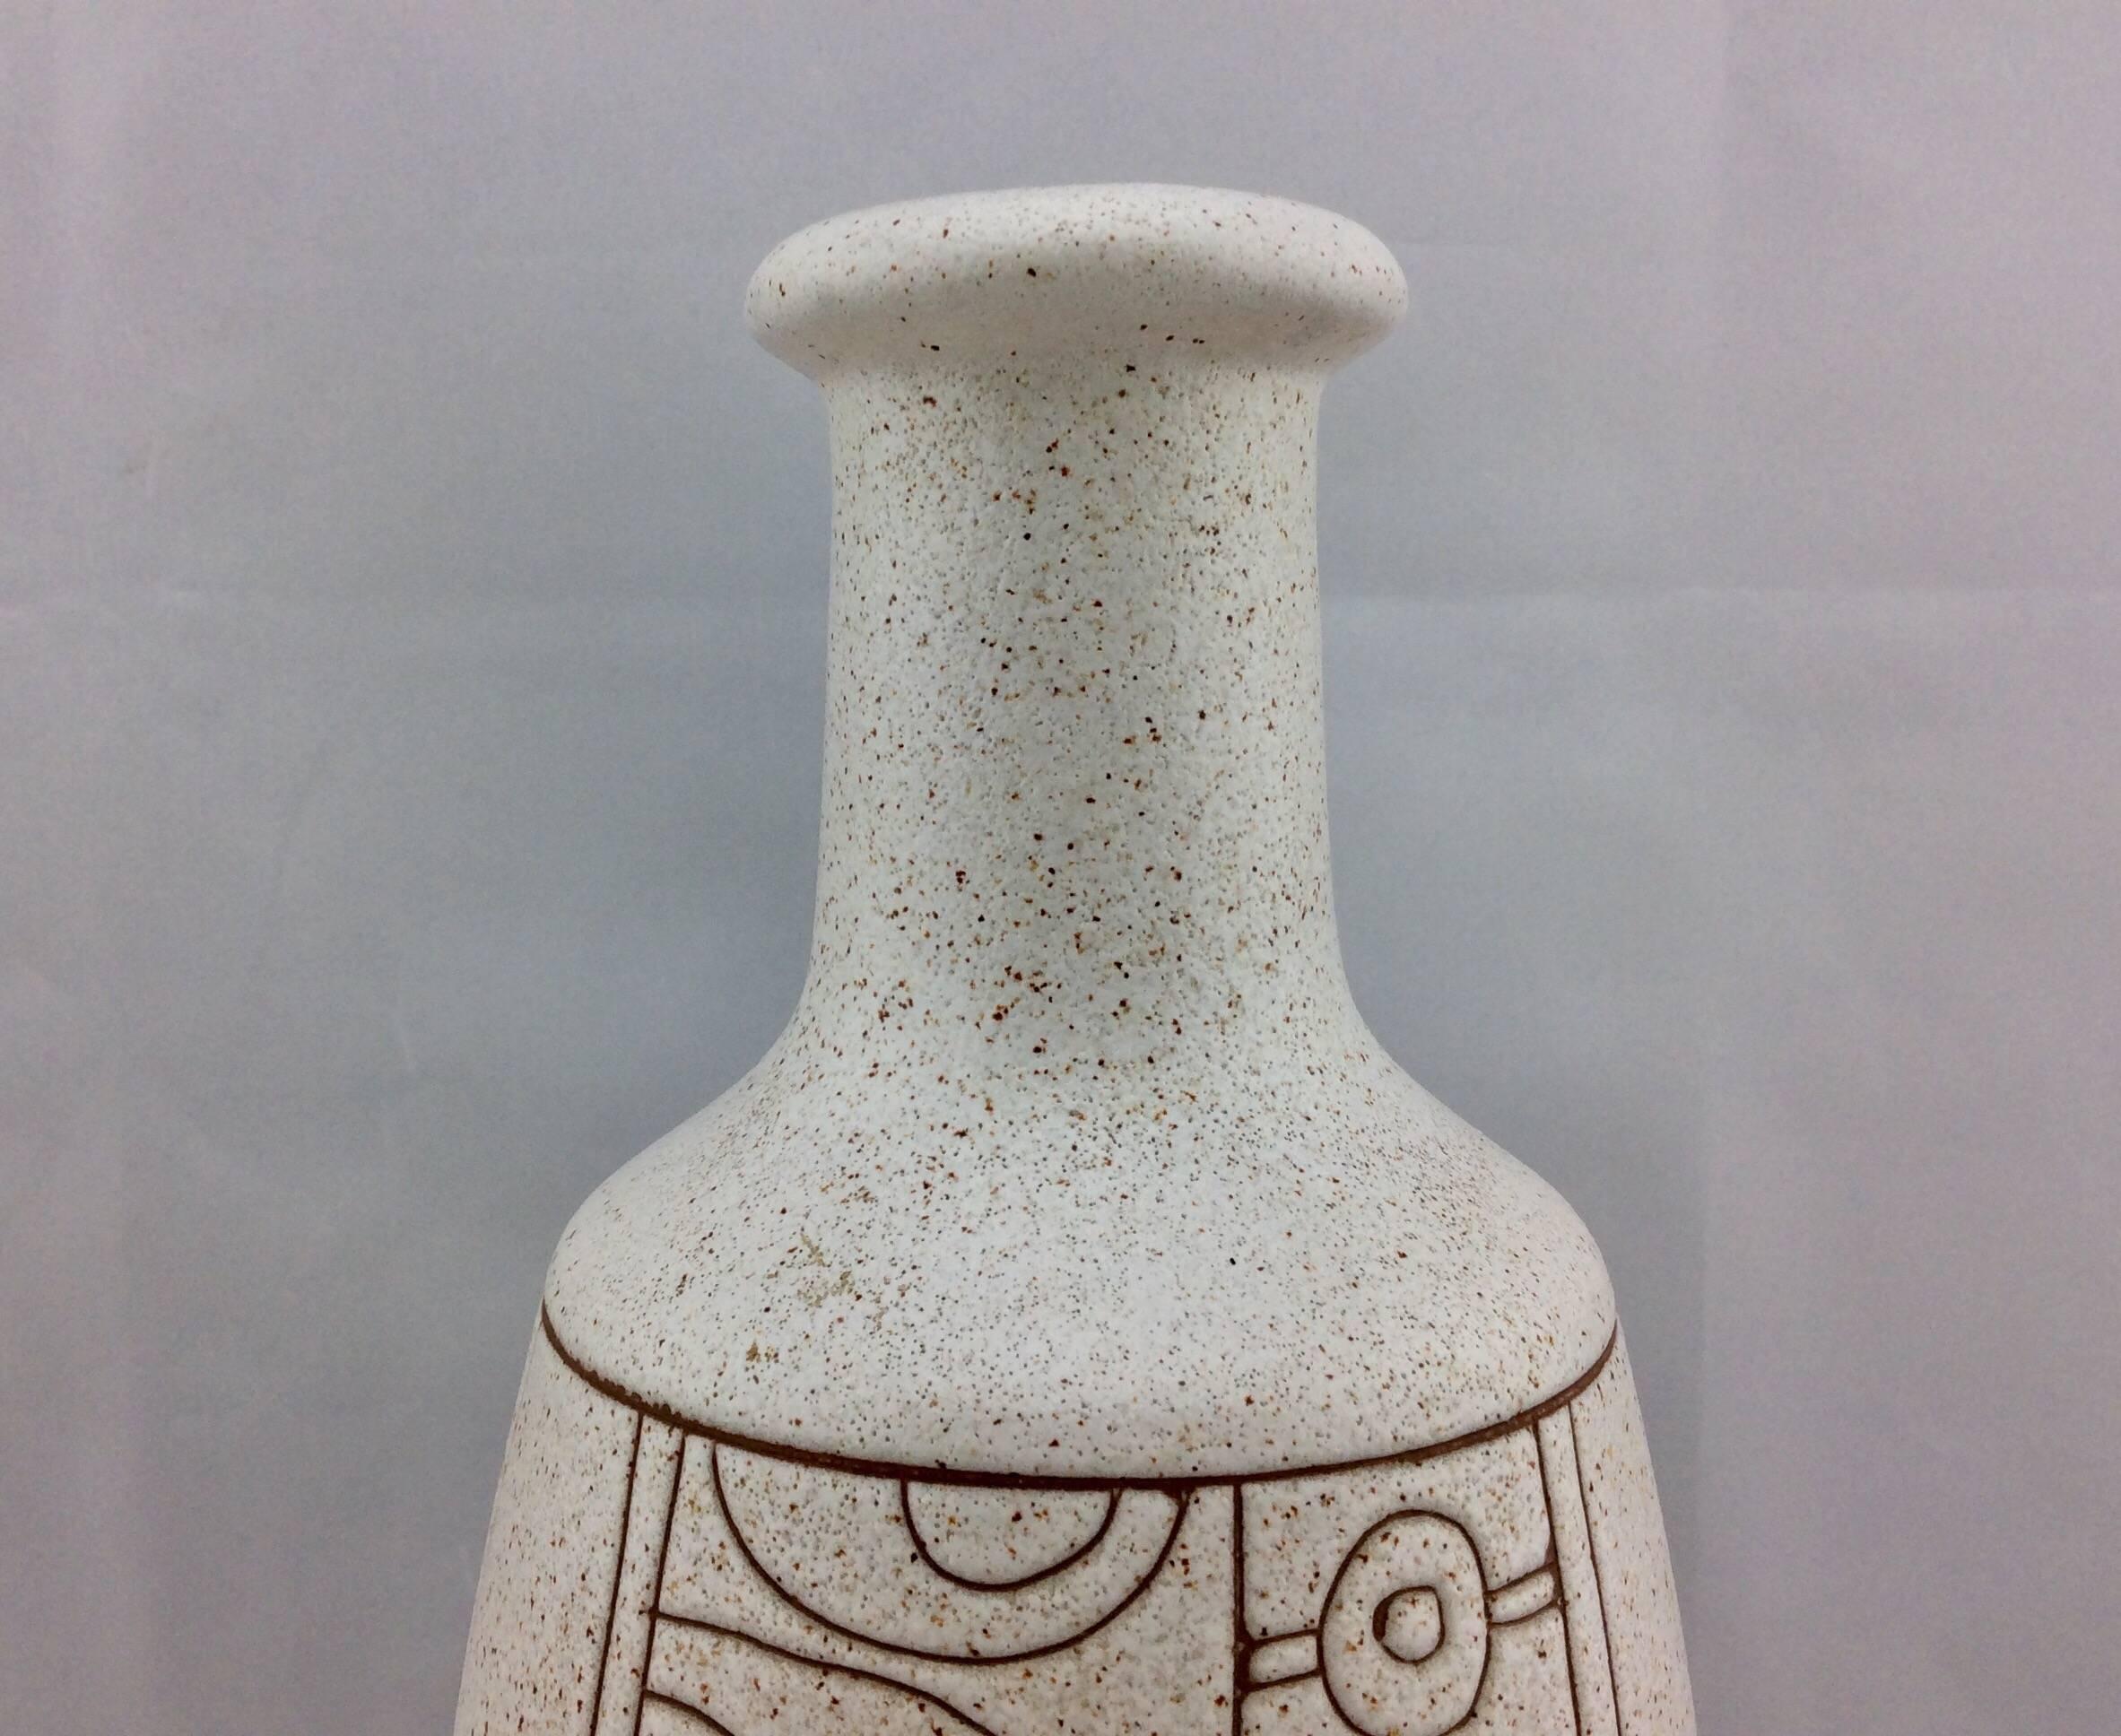 Israeli Mid-Century Modern Vase with Geometric Pattern Signed Lapid Israel